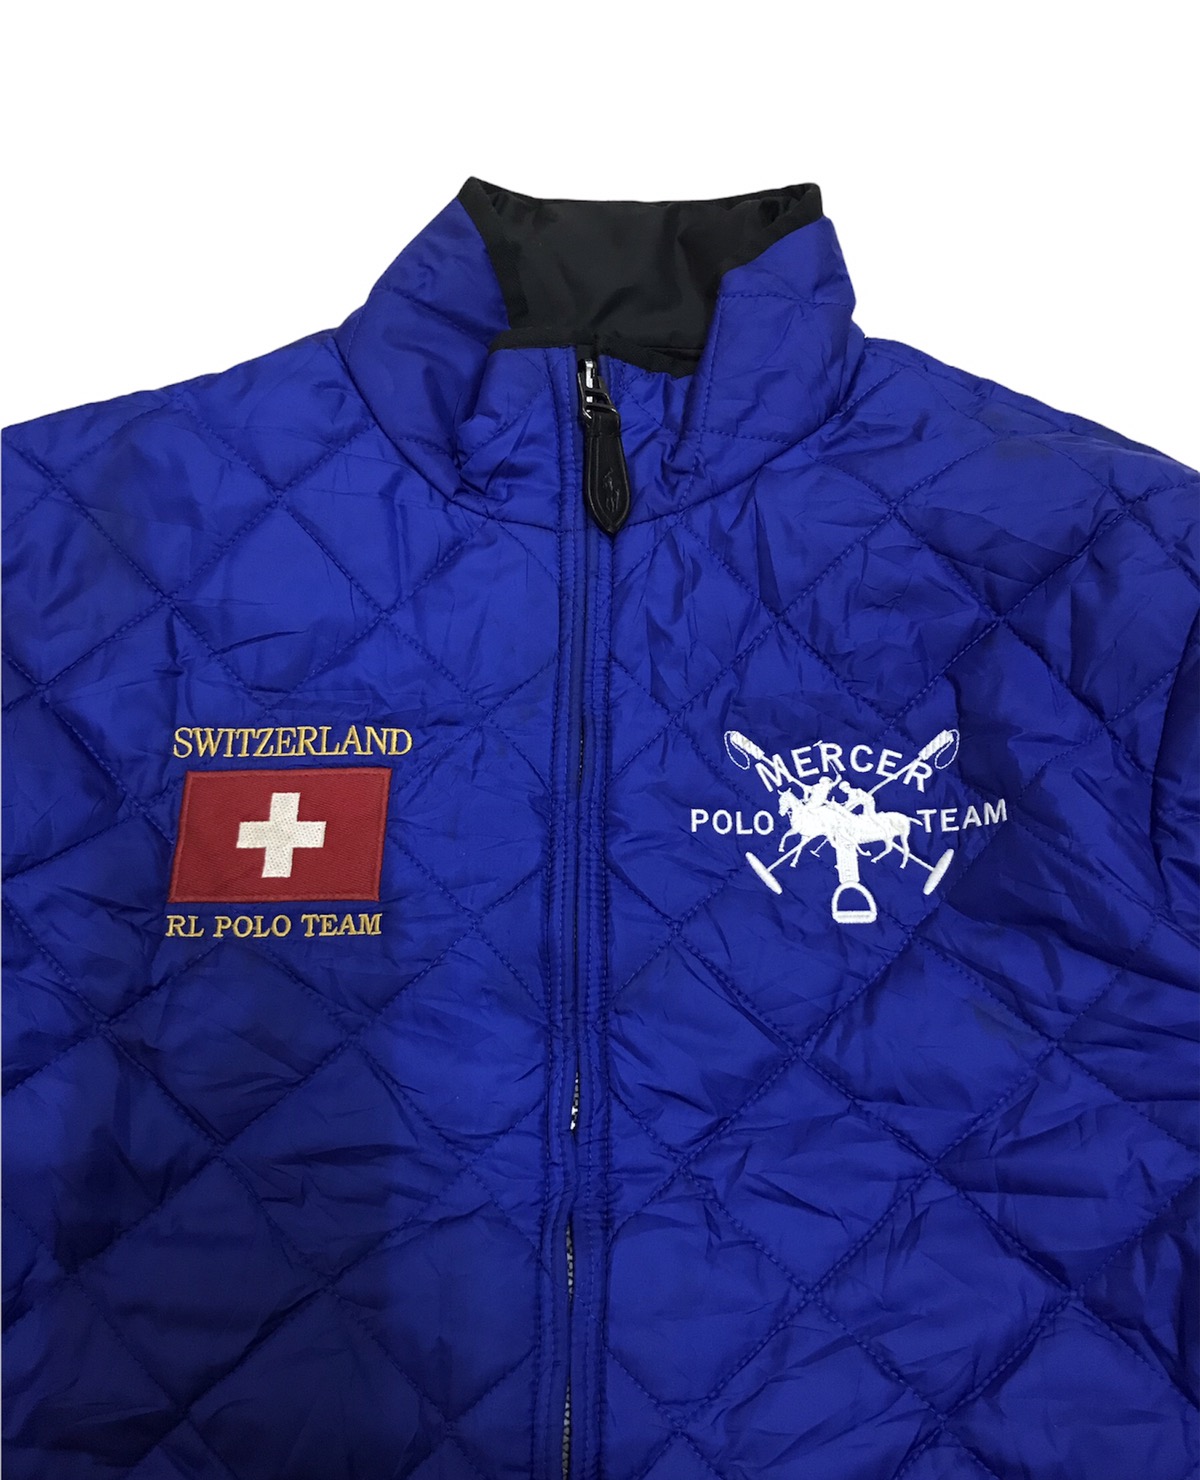 Polo Ralph Lauren - Vintage Polo RL Mercer Team Switzerland Reversible Jacket - 2